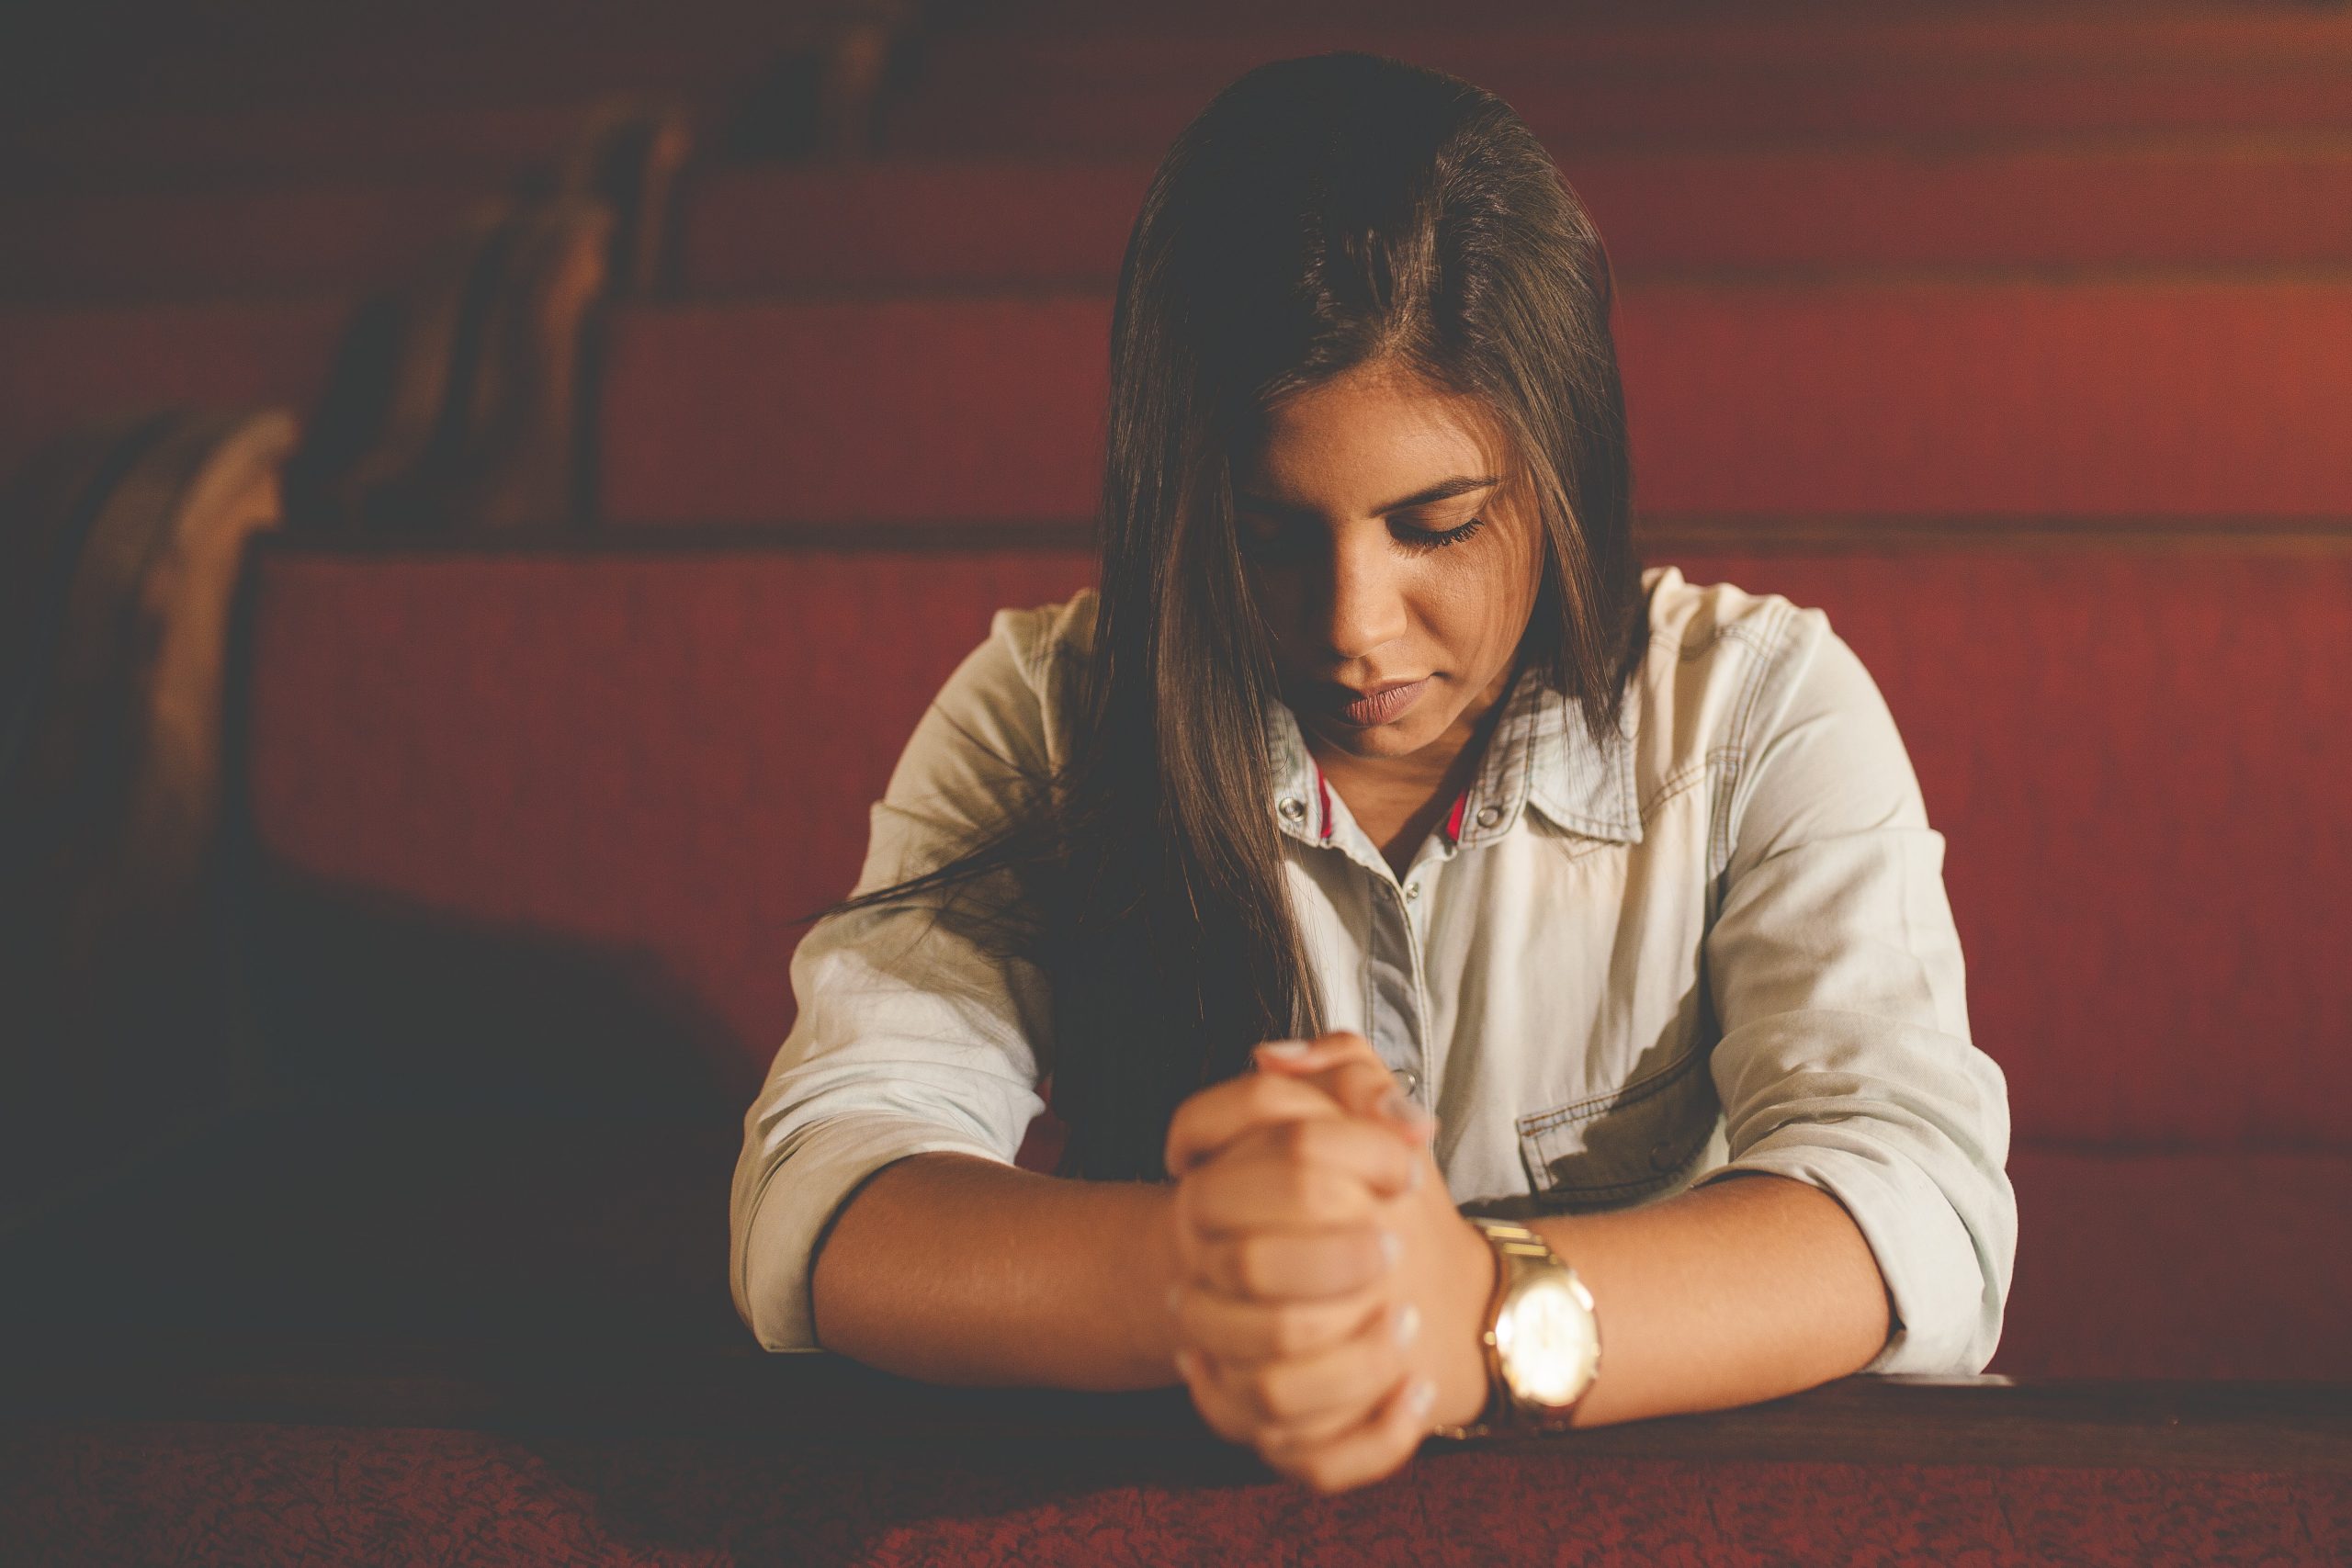 Modliaca sa žena, ktorá má evidentne veľa problémov